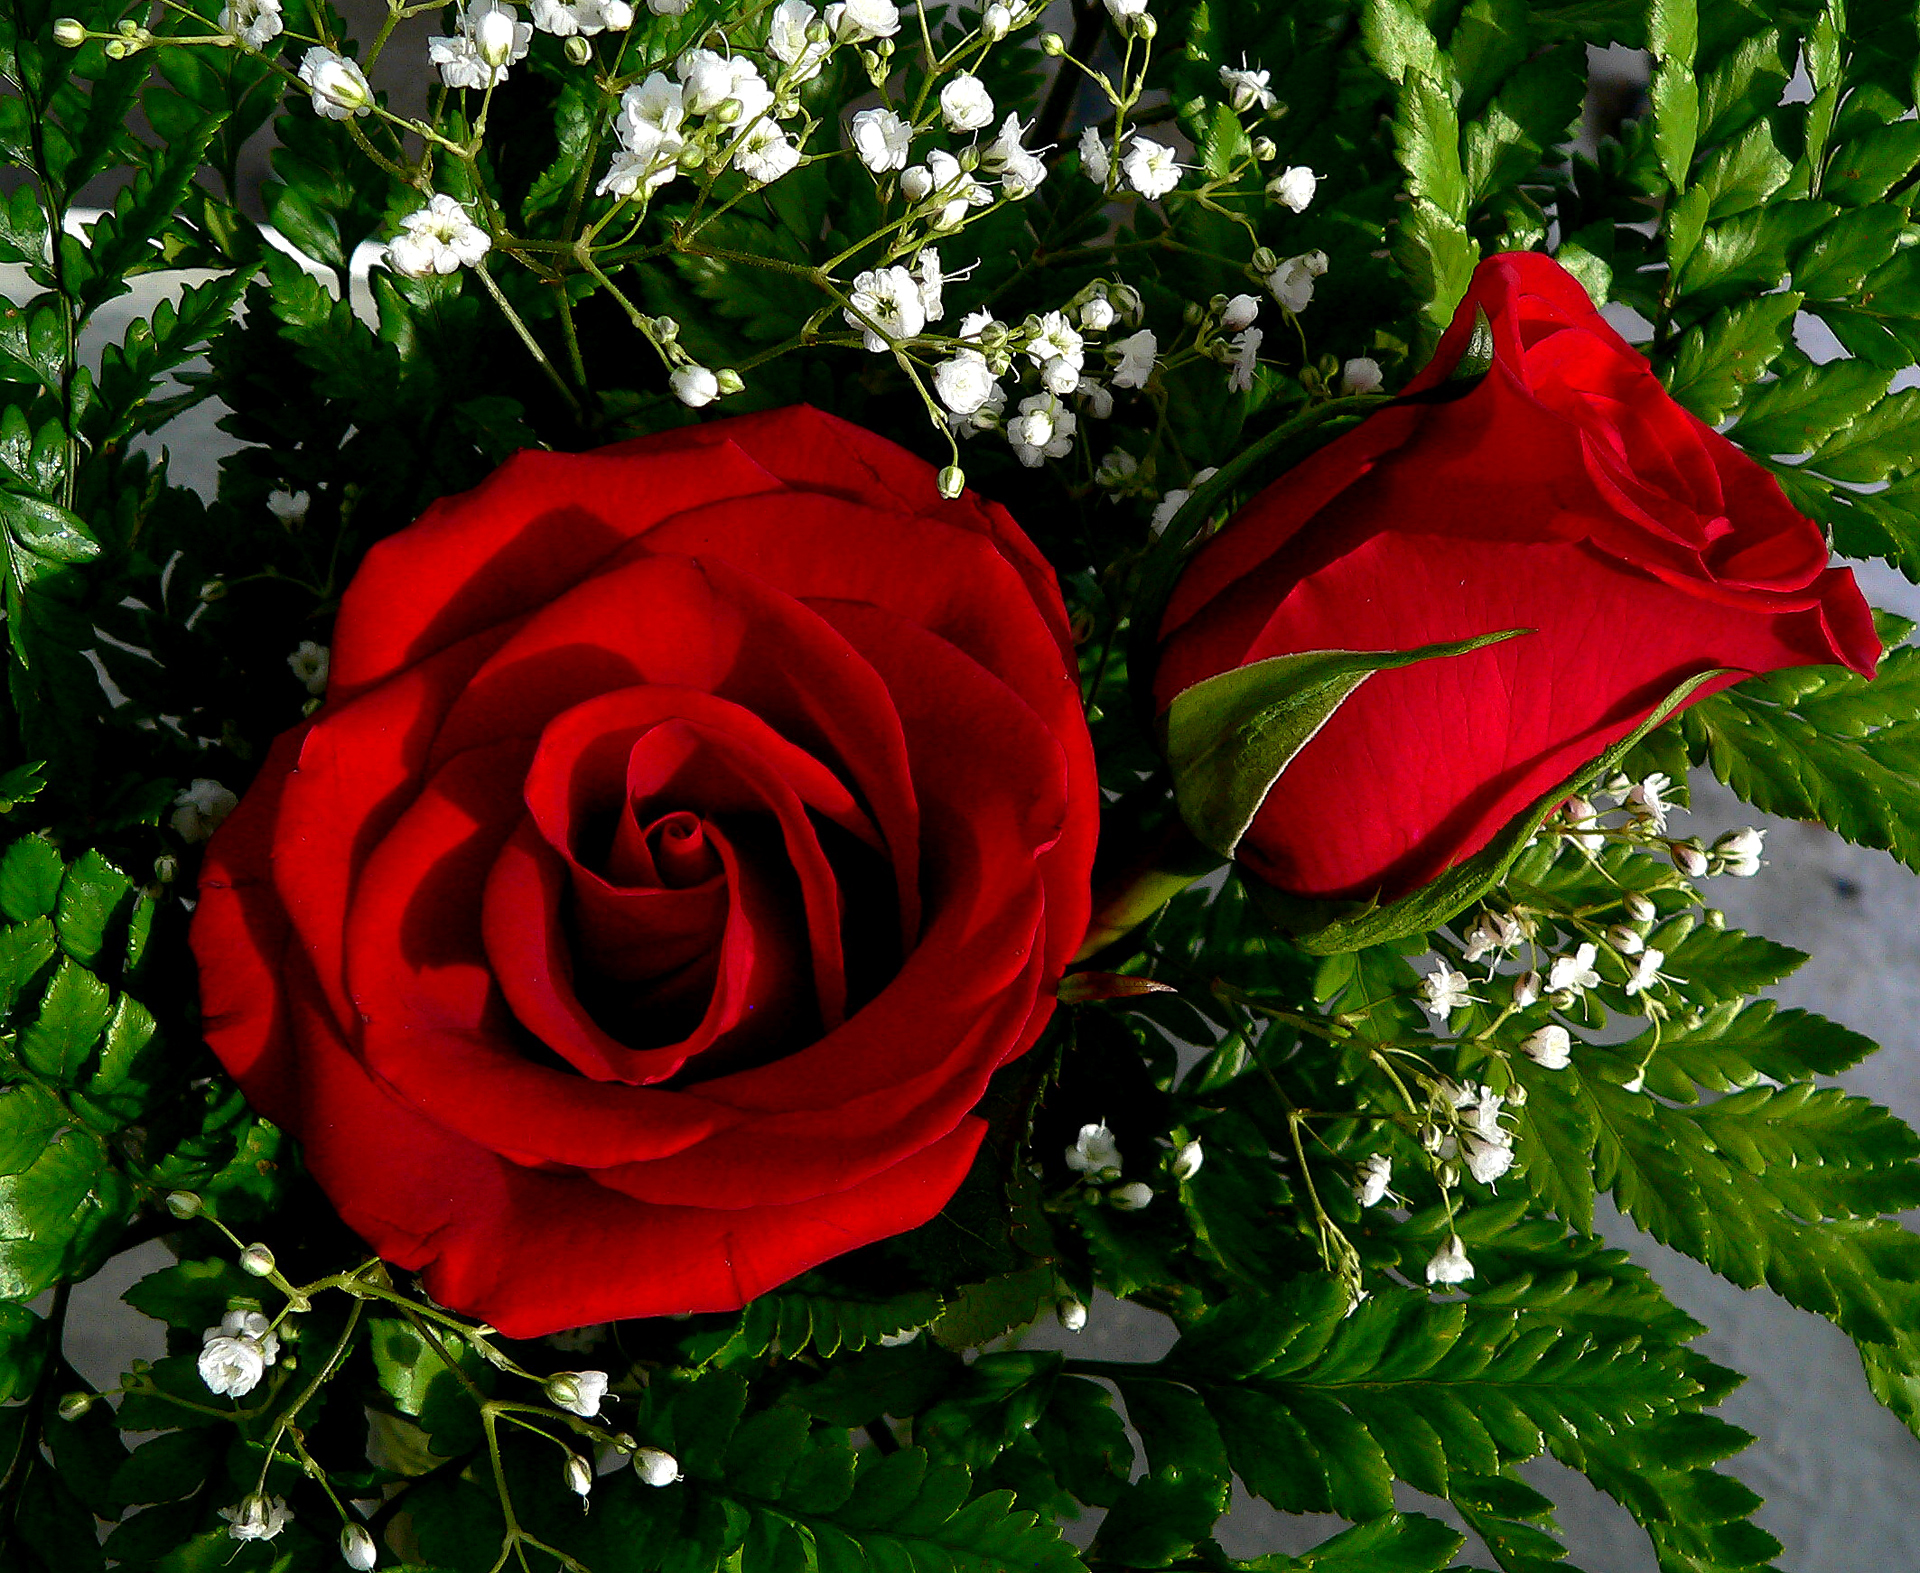 Красивое фото красной розы. Атур Гулар. Расми гулхо. Чирайли Гулар. Гулар Гулдастаси.